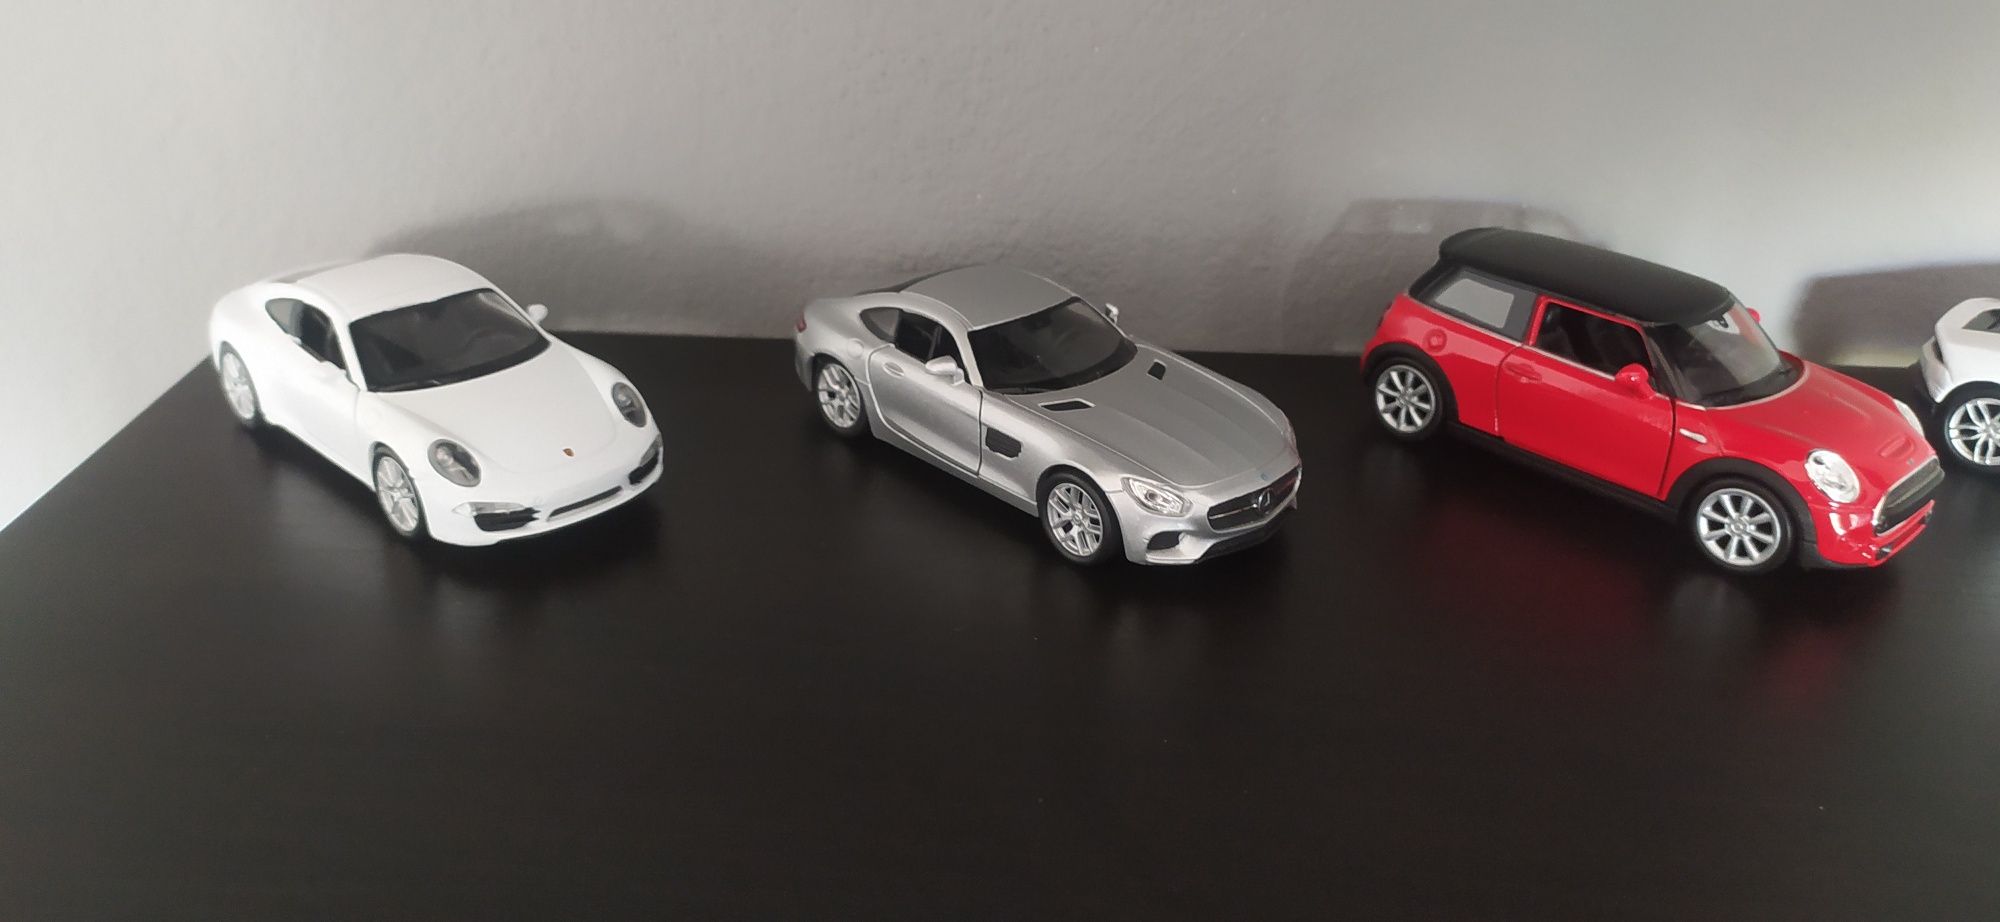 Vendo automóveis em miniatura